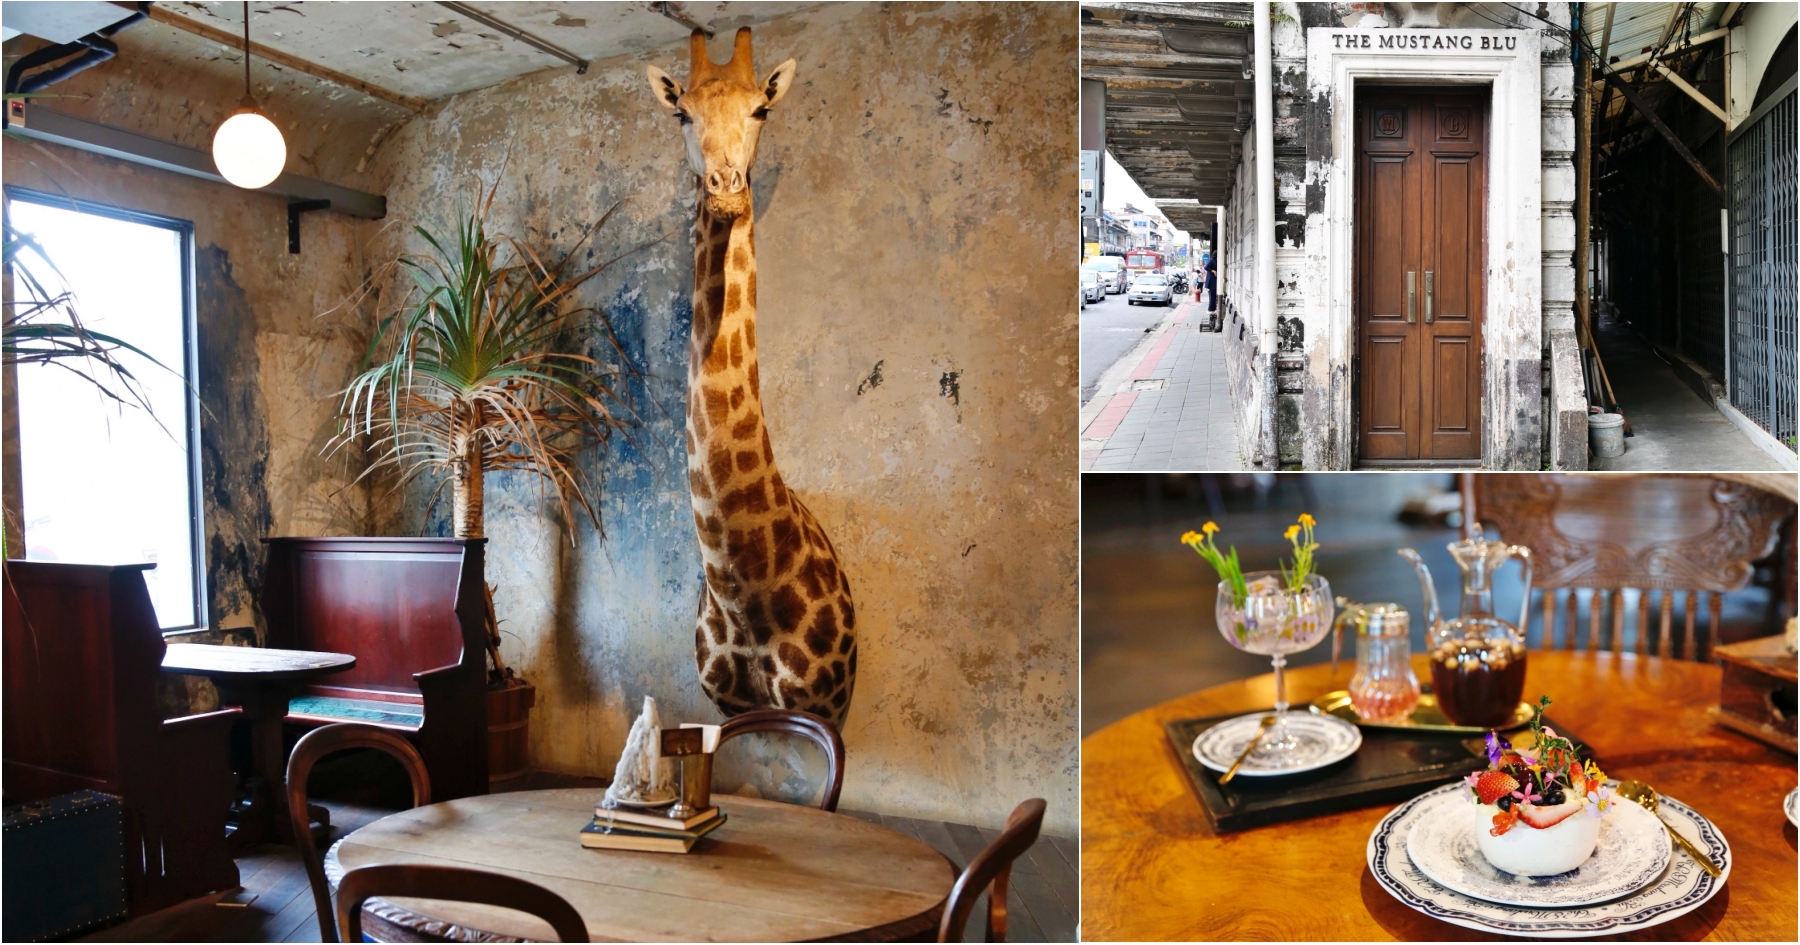 延伸閱讀：[曼谷美食]The Mustang Blu-曼谷老城區19世紀百年建築改建餐廳&精品旅館~走入博物館裡欣賞動物標本．滿滿的叢林風格